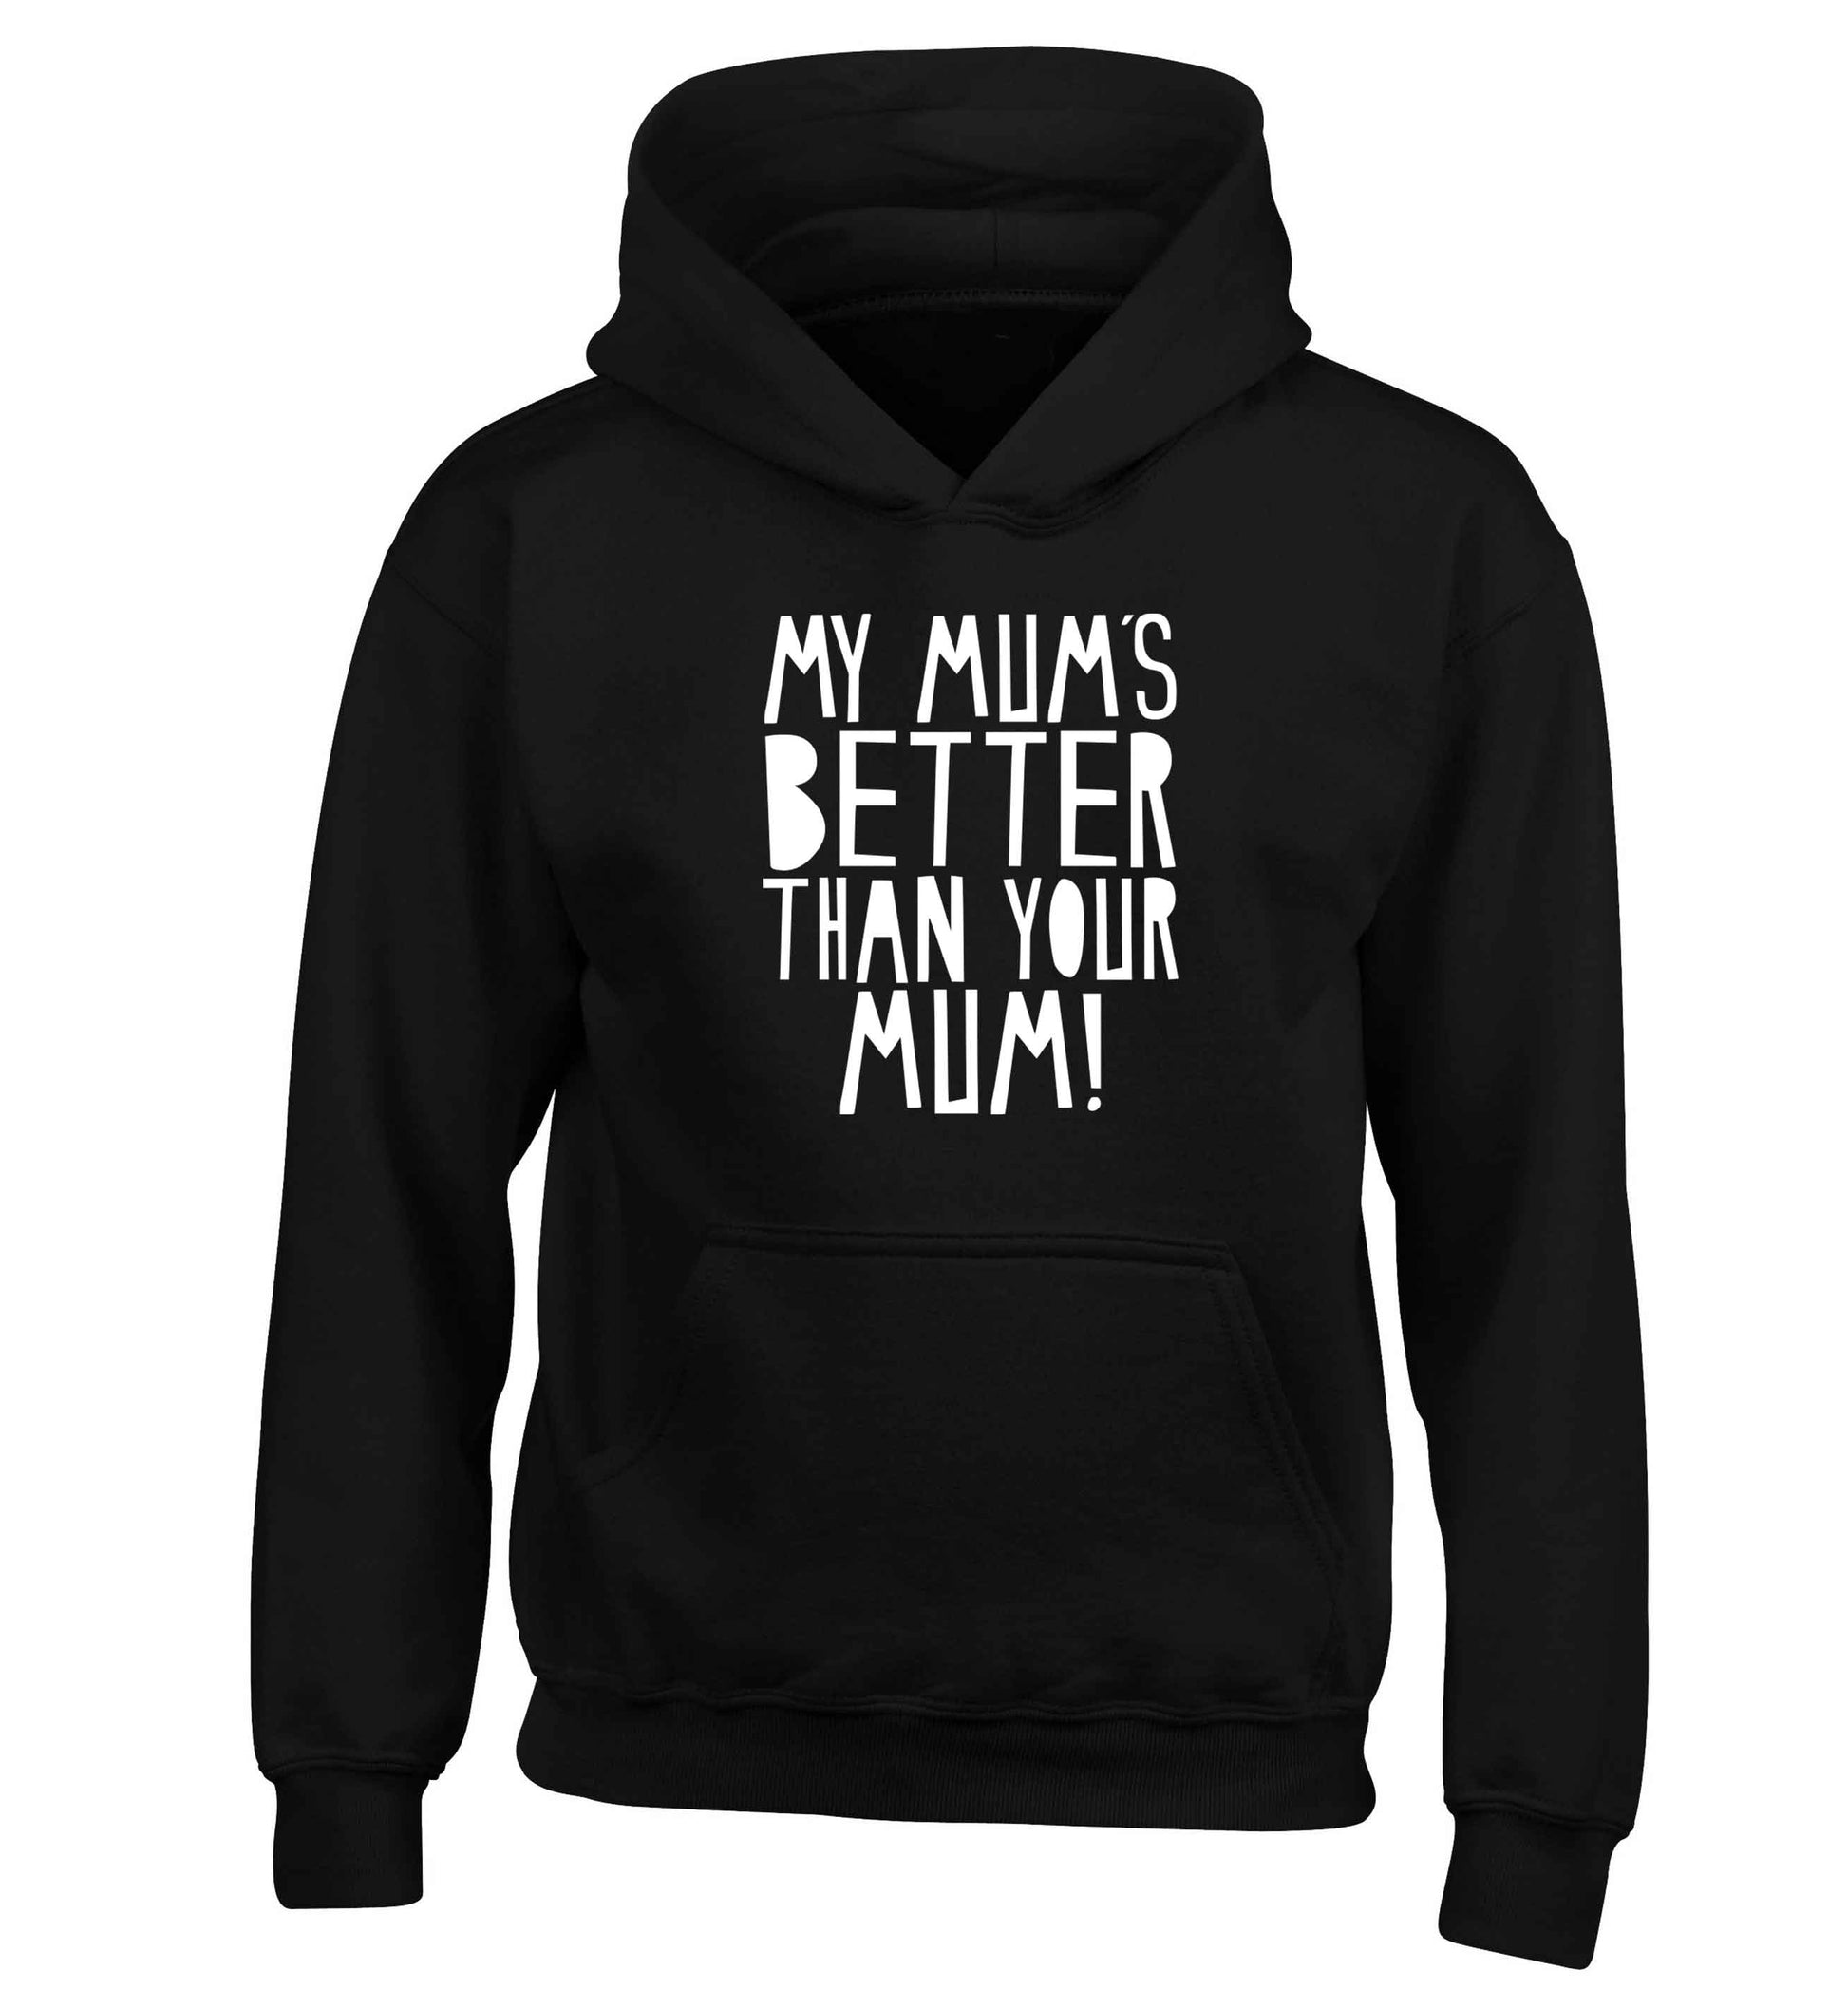 My mum's better than your mum children's black hoodie 12-13 Years